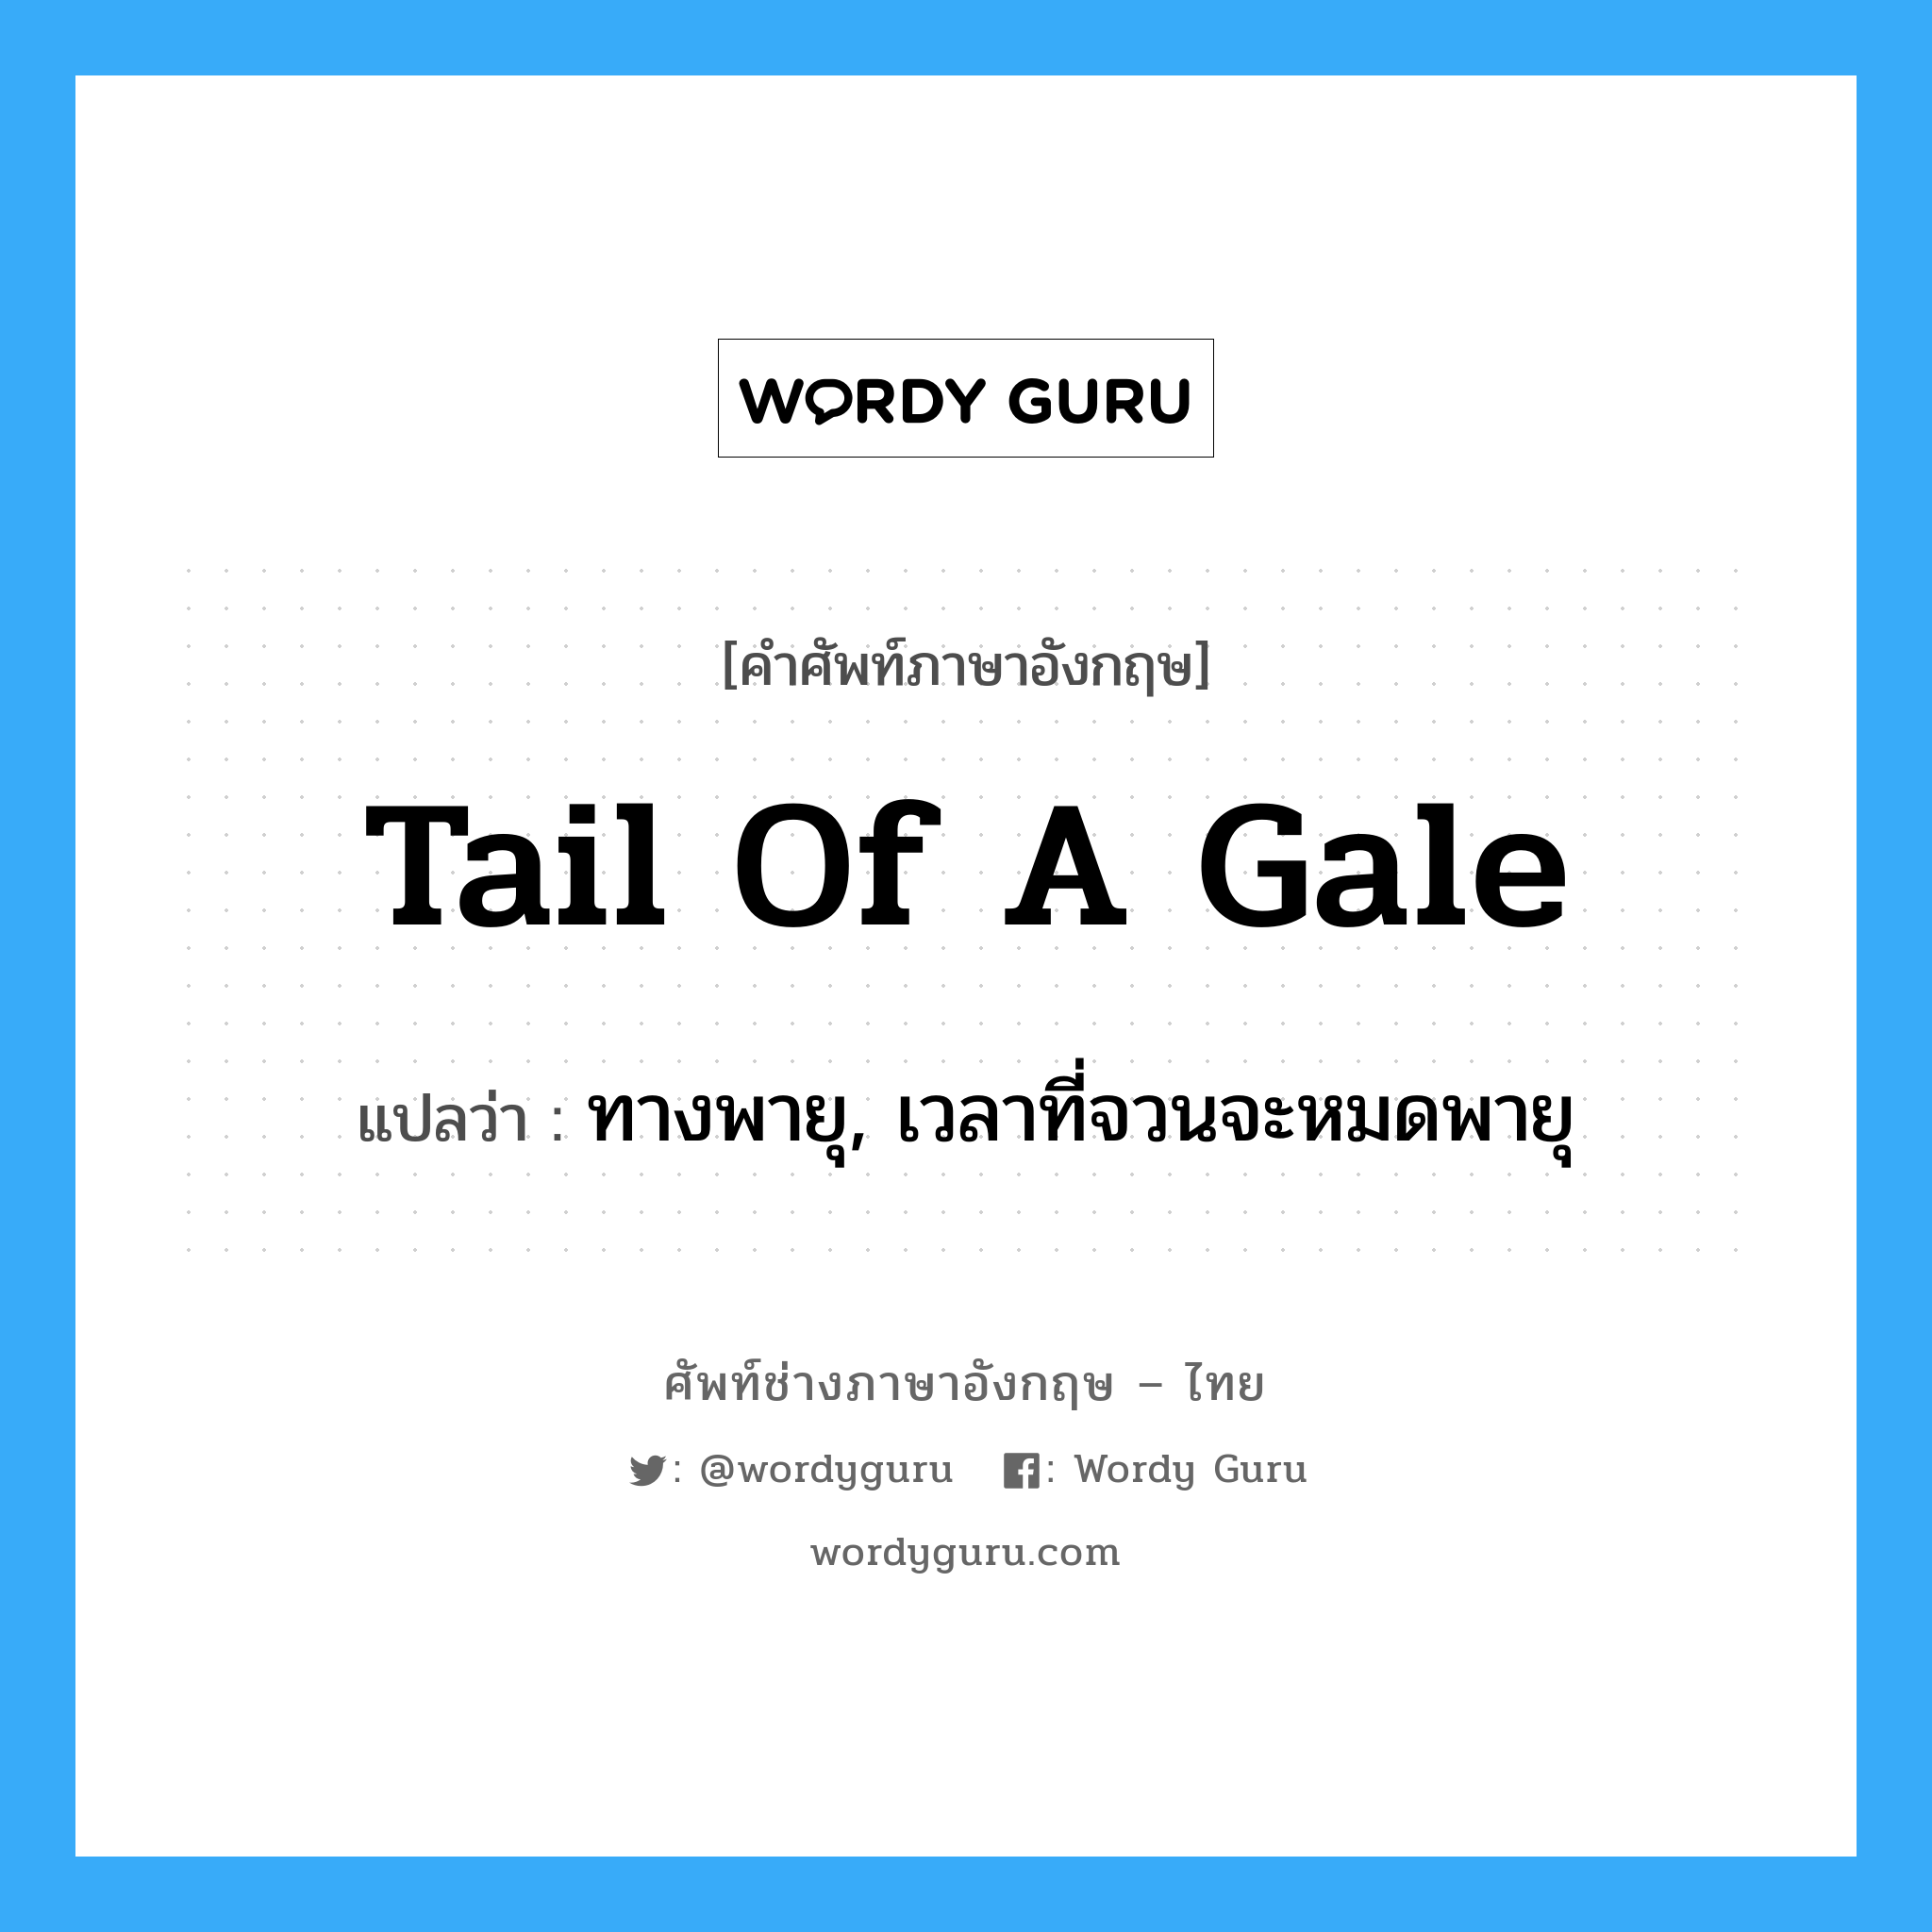 tail of a gale แปลว่า?, คำศัพท์ช่างภาษาอังกฤษ - ไทย tail of a gale คำศัพท์ภาษาอังกฤษ tail of a gale แปลว่า ทางพายุ, เวลาที่จวนจะหมดพายุ